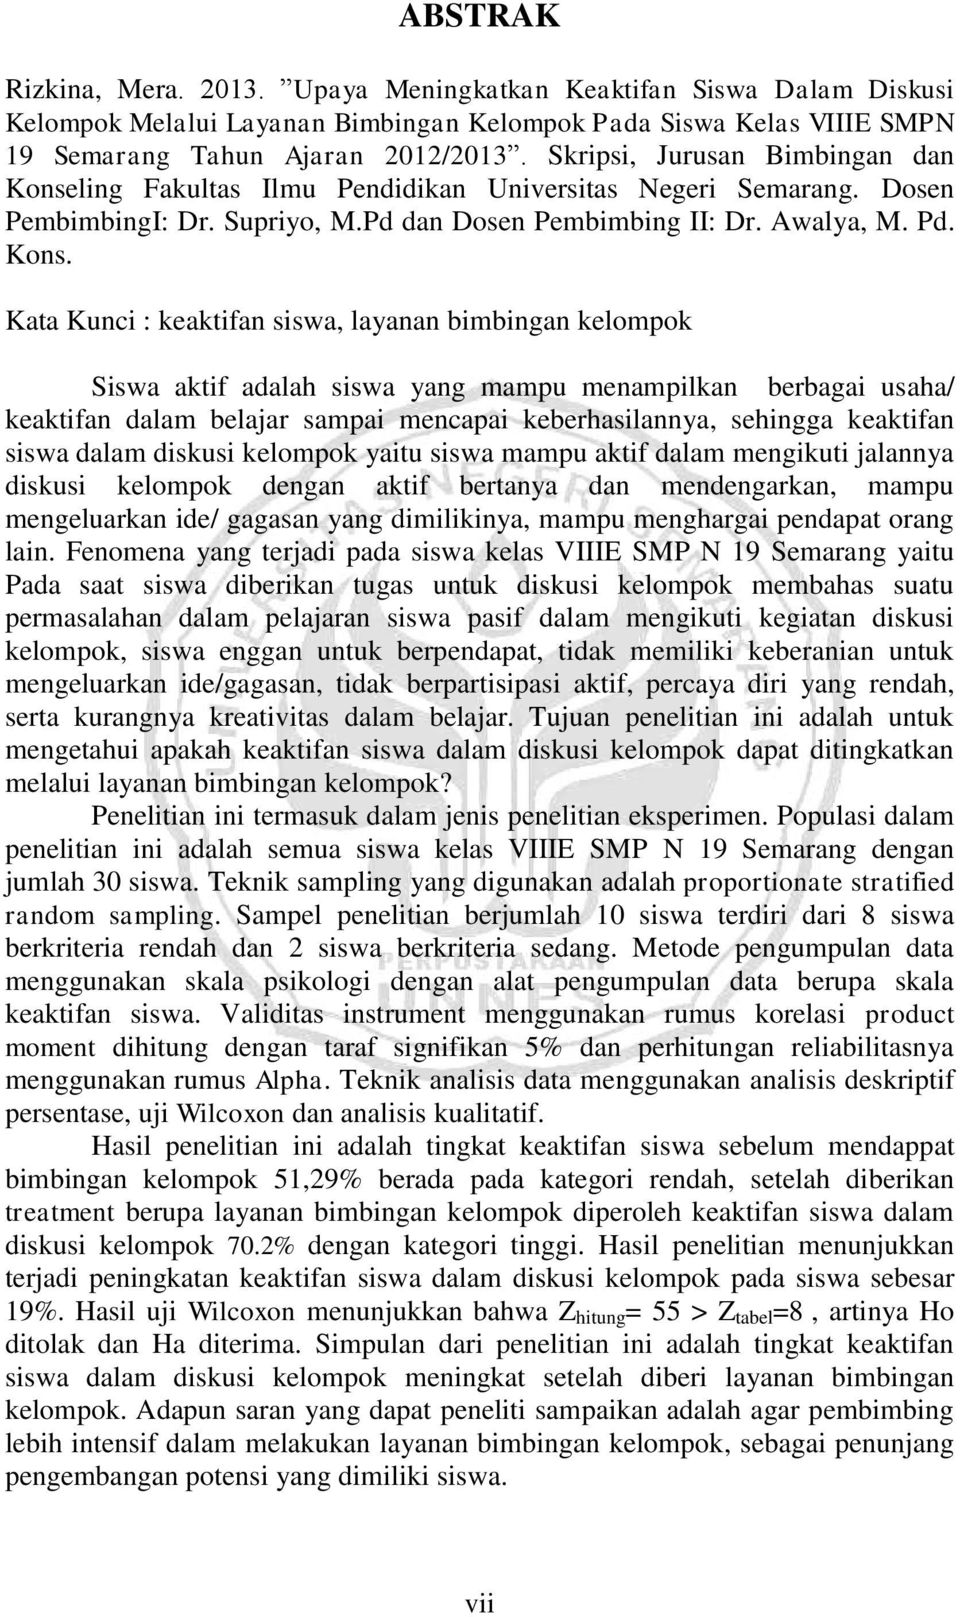 ling Fakultas Ilmu Pendidikan Universitas Negeri Semarang. Dosen PembimbingI: Dr. Supriyo, M.Pd dan Dosen Pembimbing II: Dr. Awalya, M. Pd. Kons.